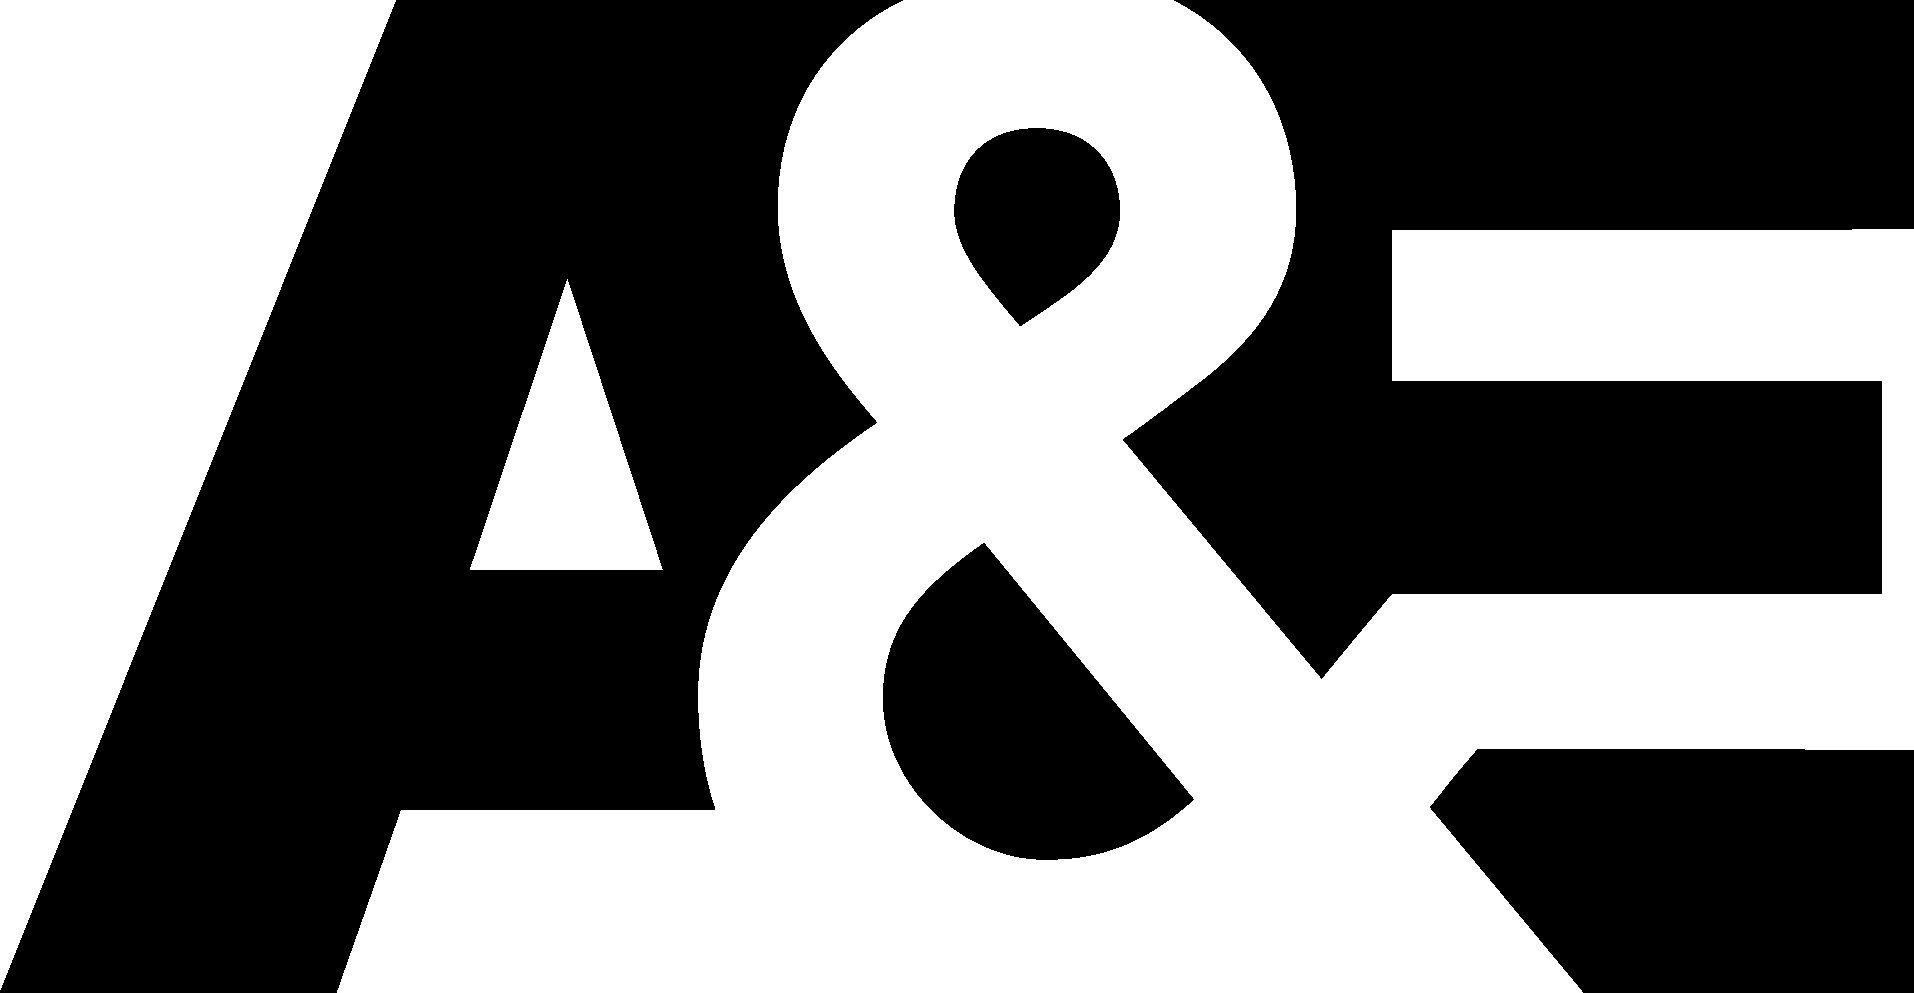 A&E Network Logo [PDF]